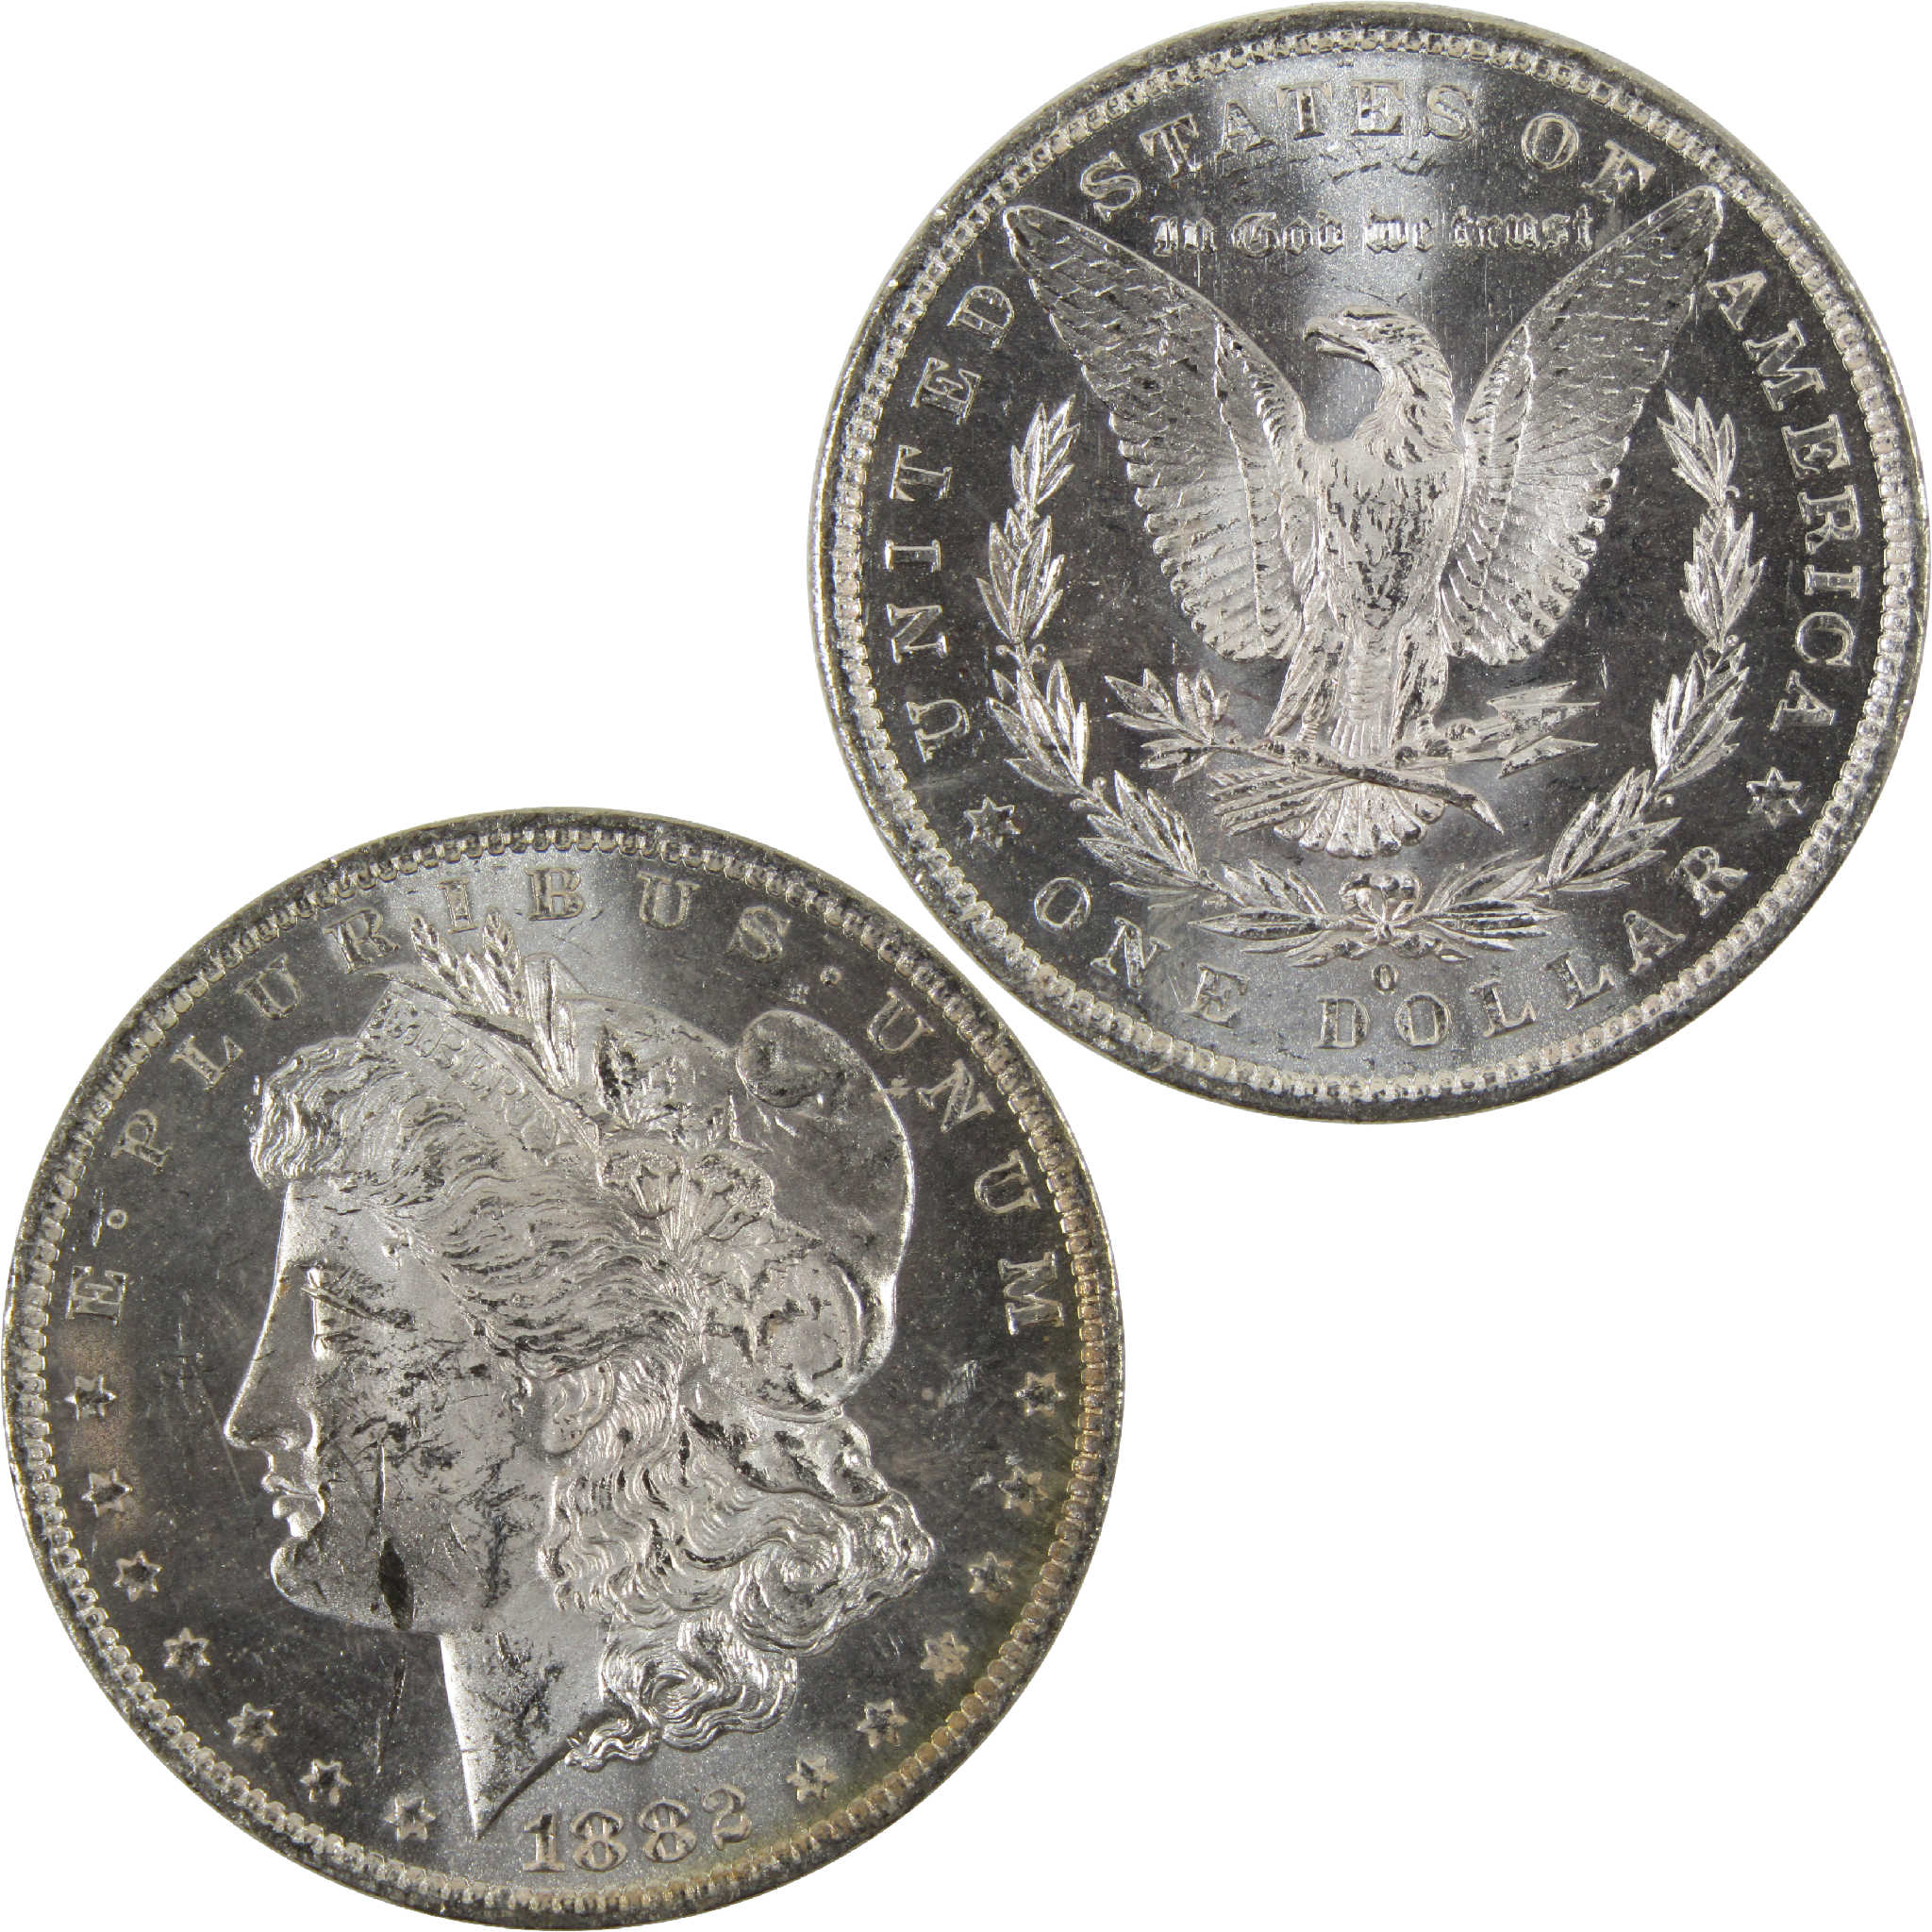 1882 O Morgan Dollar BU Uncirculated 90% Silver $1 Coin SKU:I8918 - Morgan coin - Morgan silver dollar - Morgan silver dollar for sale - Profile Coins &amp; Collectibles